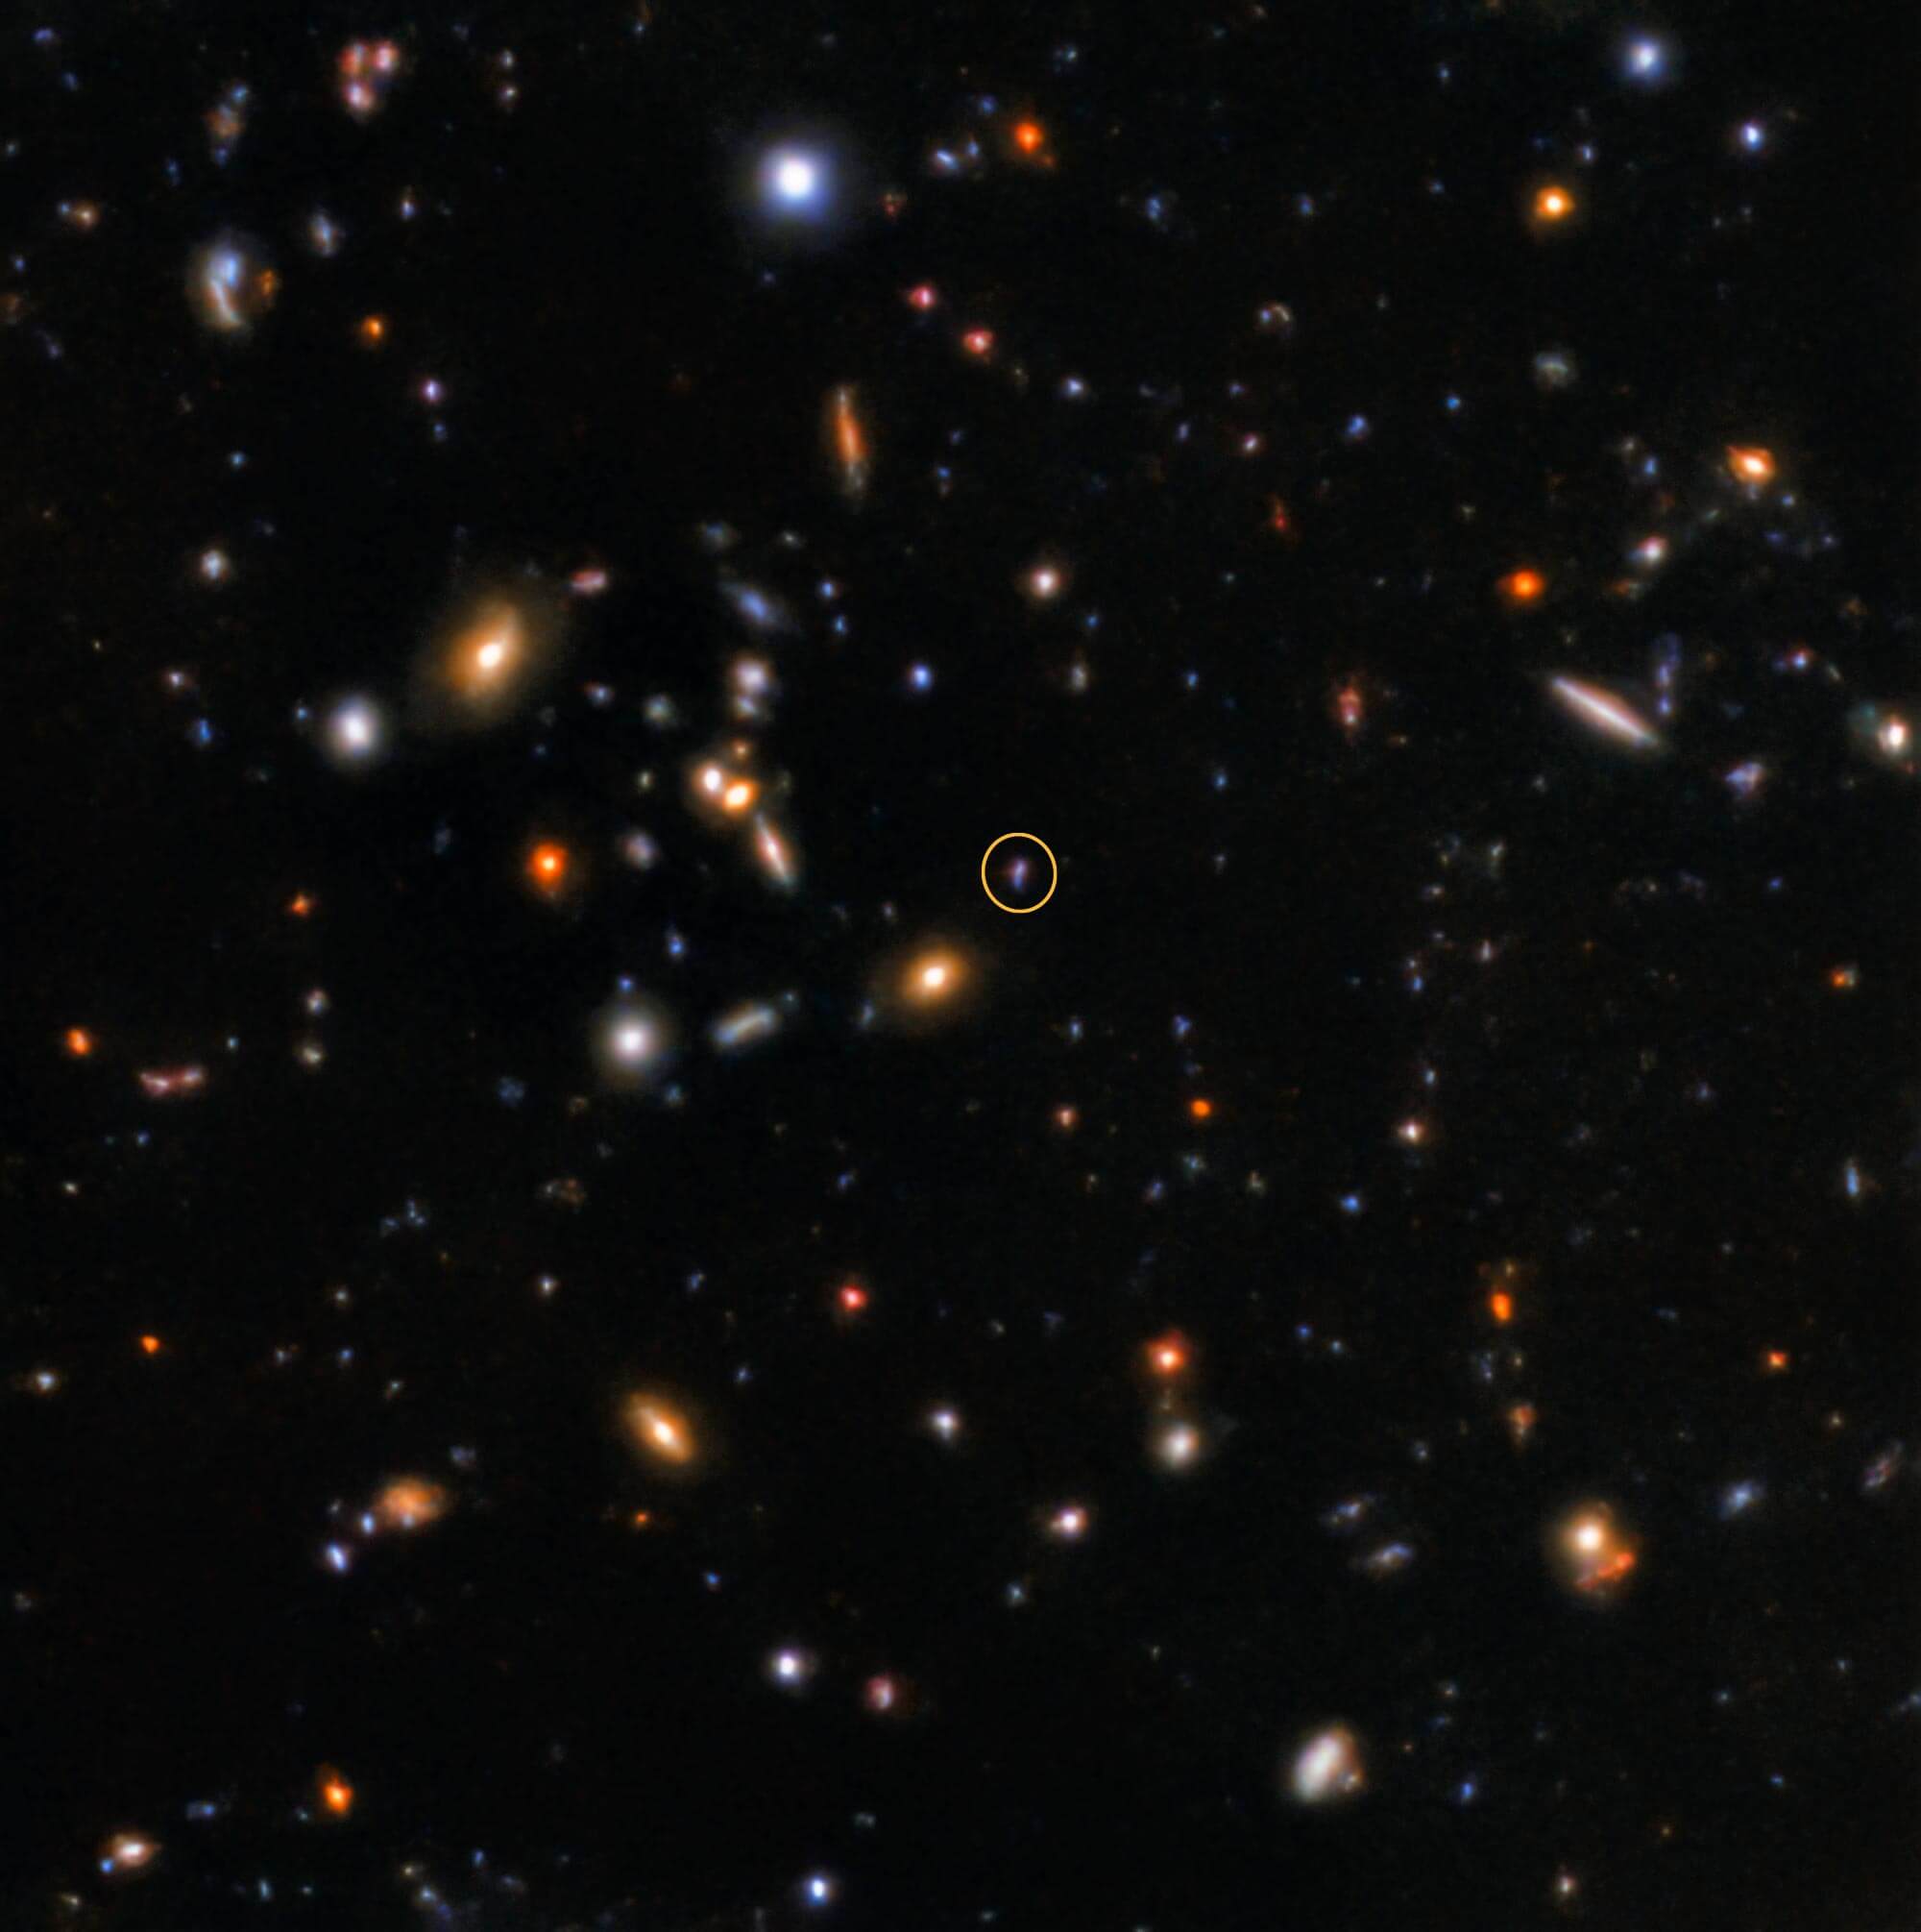 天文学家发现该效果的最古老的闪烁观察到的宇宙